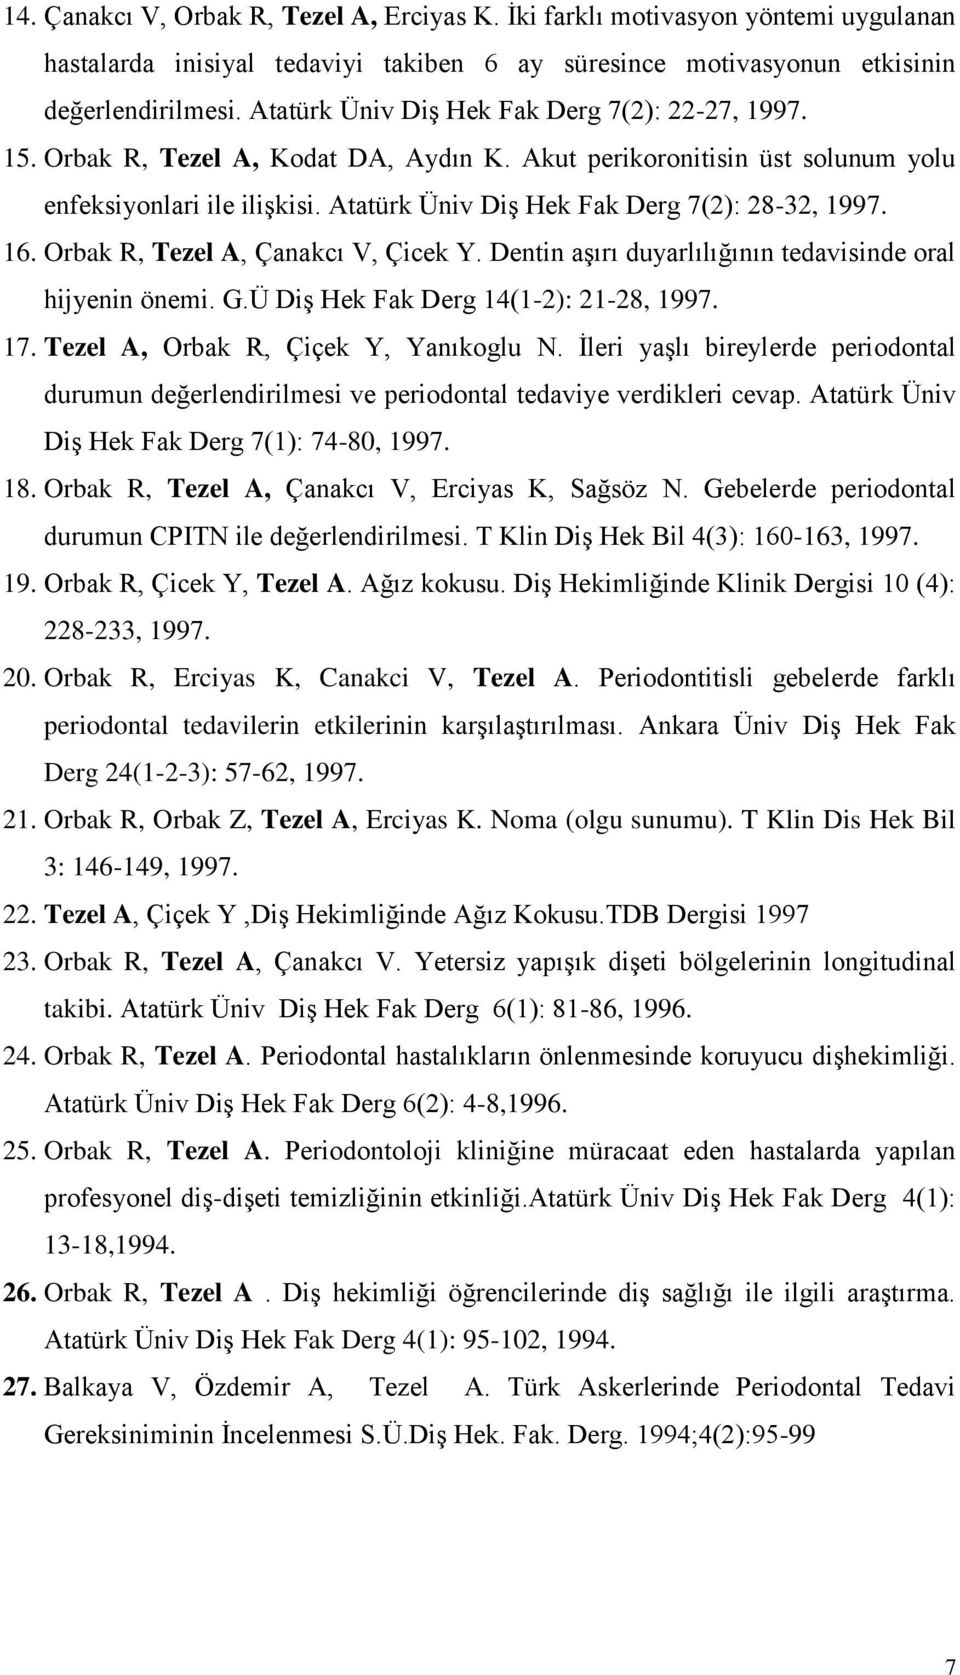 Atatürk Üniv DiĢ Hek Fak Derg 7(2): 28-32, 1997. 16. Orbak R, Tezel A, Çanakcı V, Çicek Y. Dentin aģırı duyarlılığının tedavisinde oral hijyenin önemi. G.Ü DiĢ Hek Fak Derg 14(1-2): 21-28, 1997. 17.